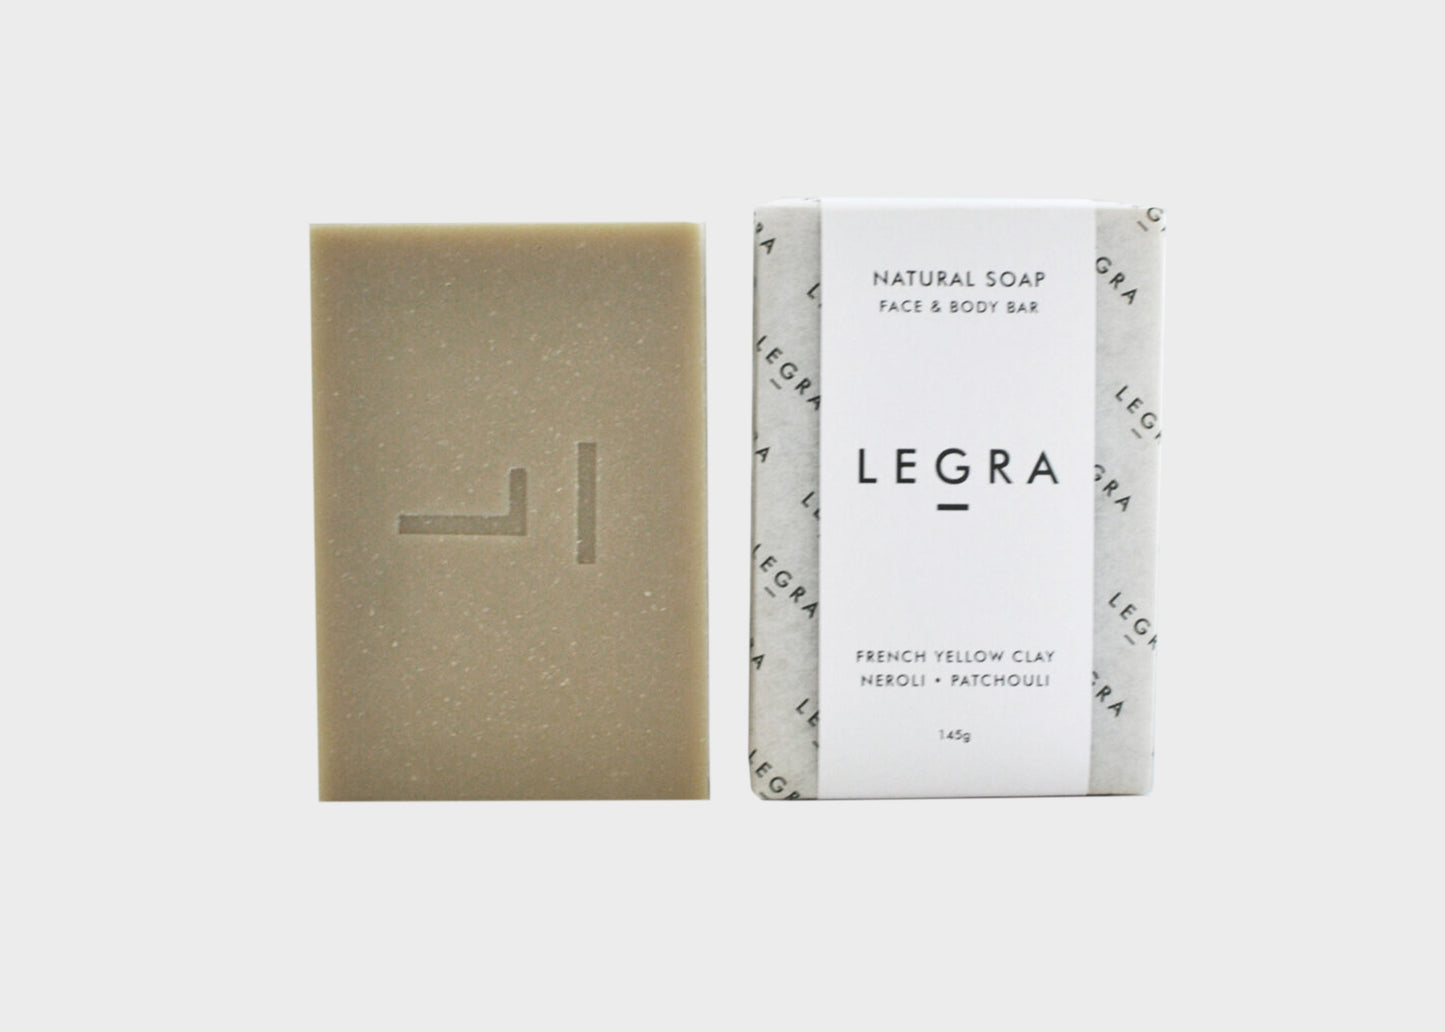 Legra Soap - French Yellow Clay, Neroli, & Patchouli